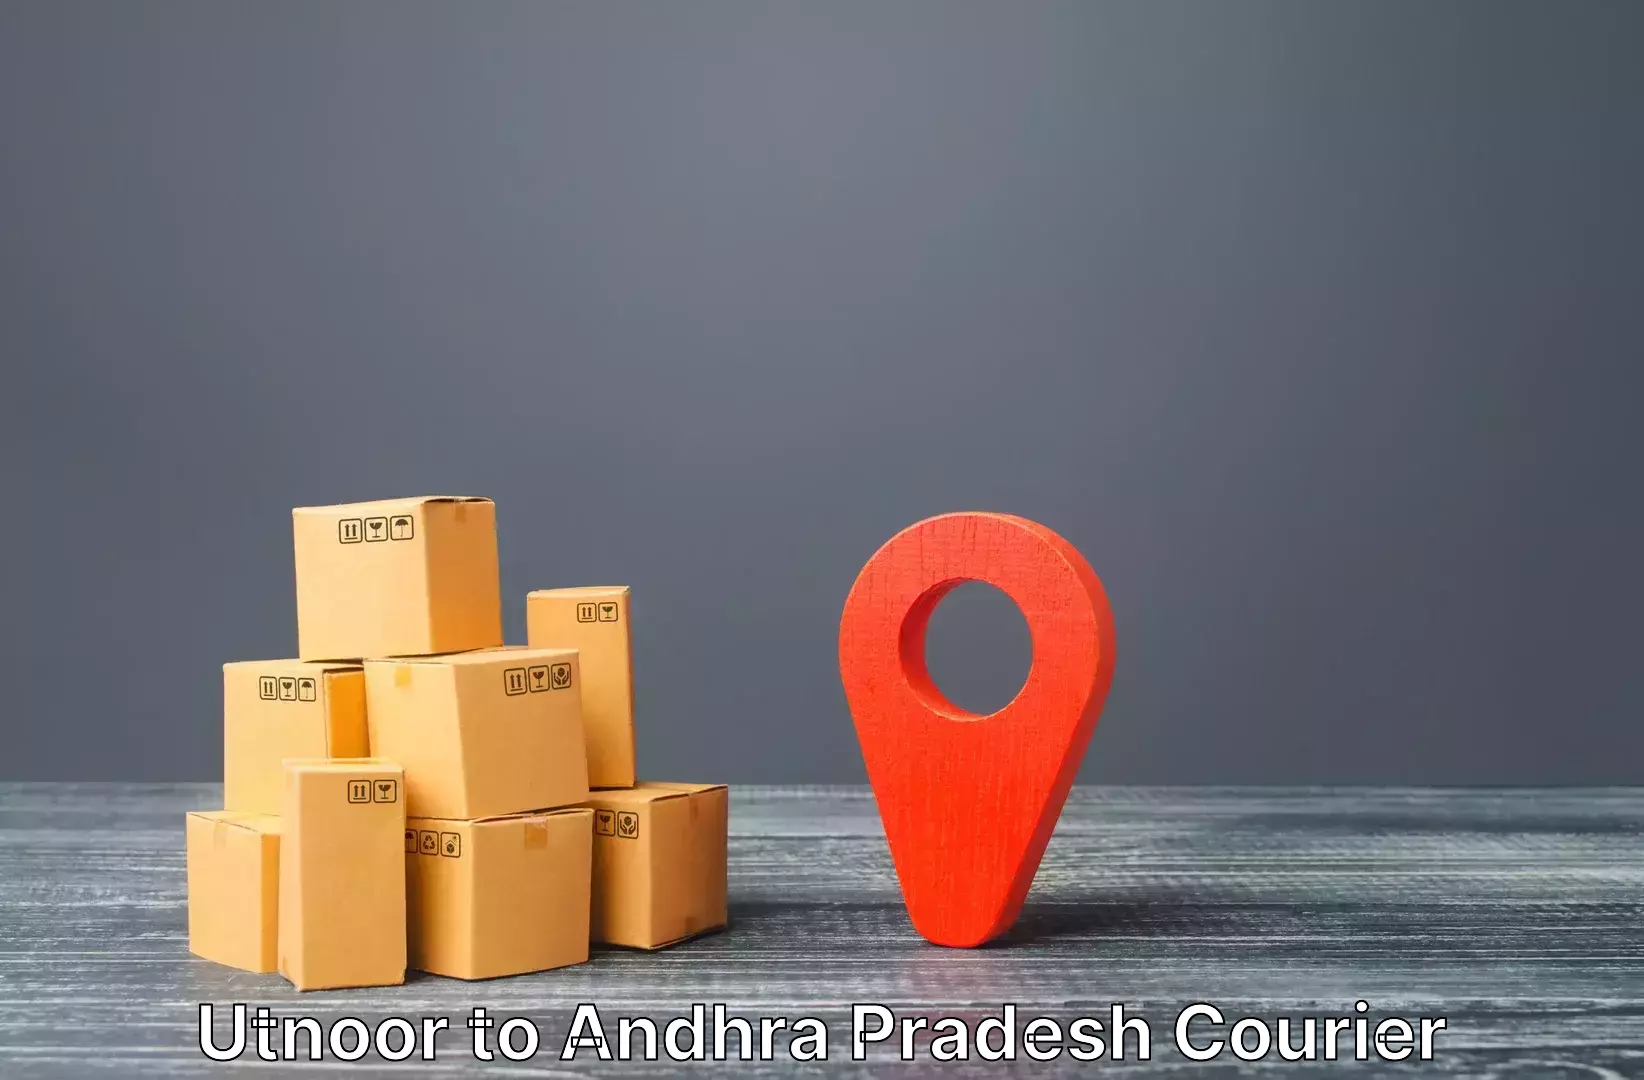 Baggage relocation service Utnoor to Andhra Pradesh